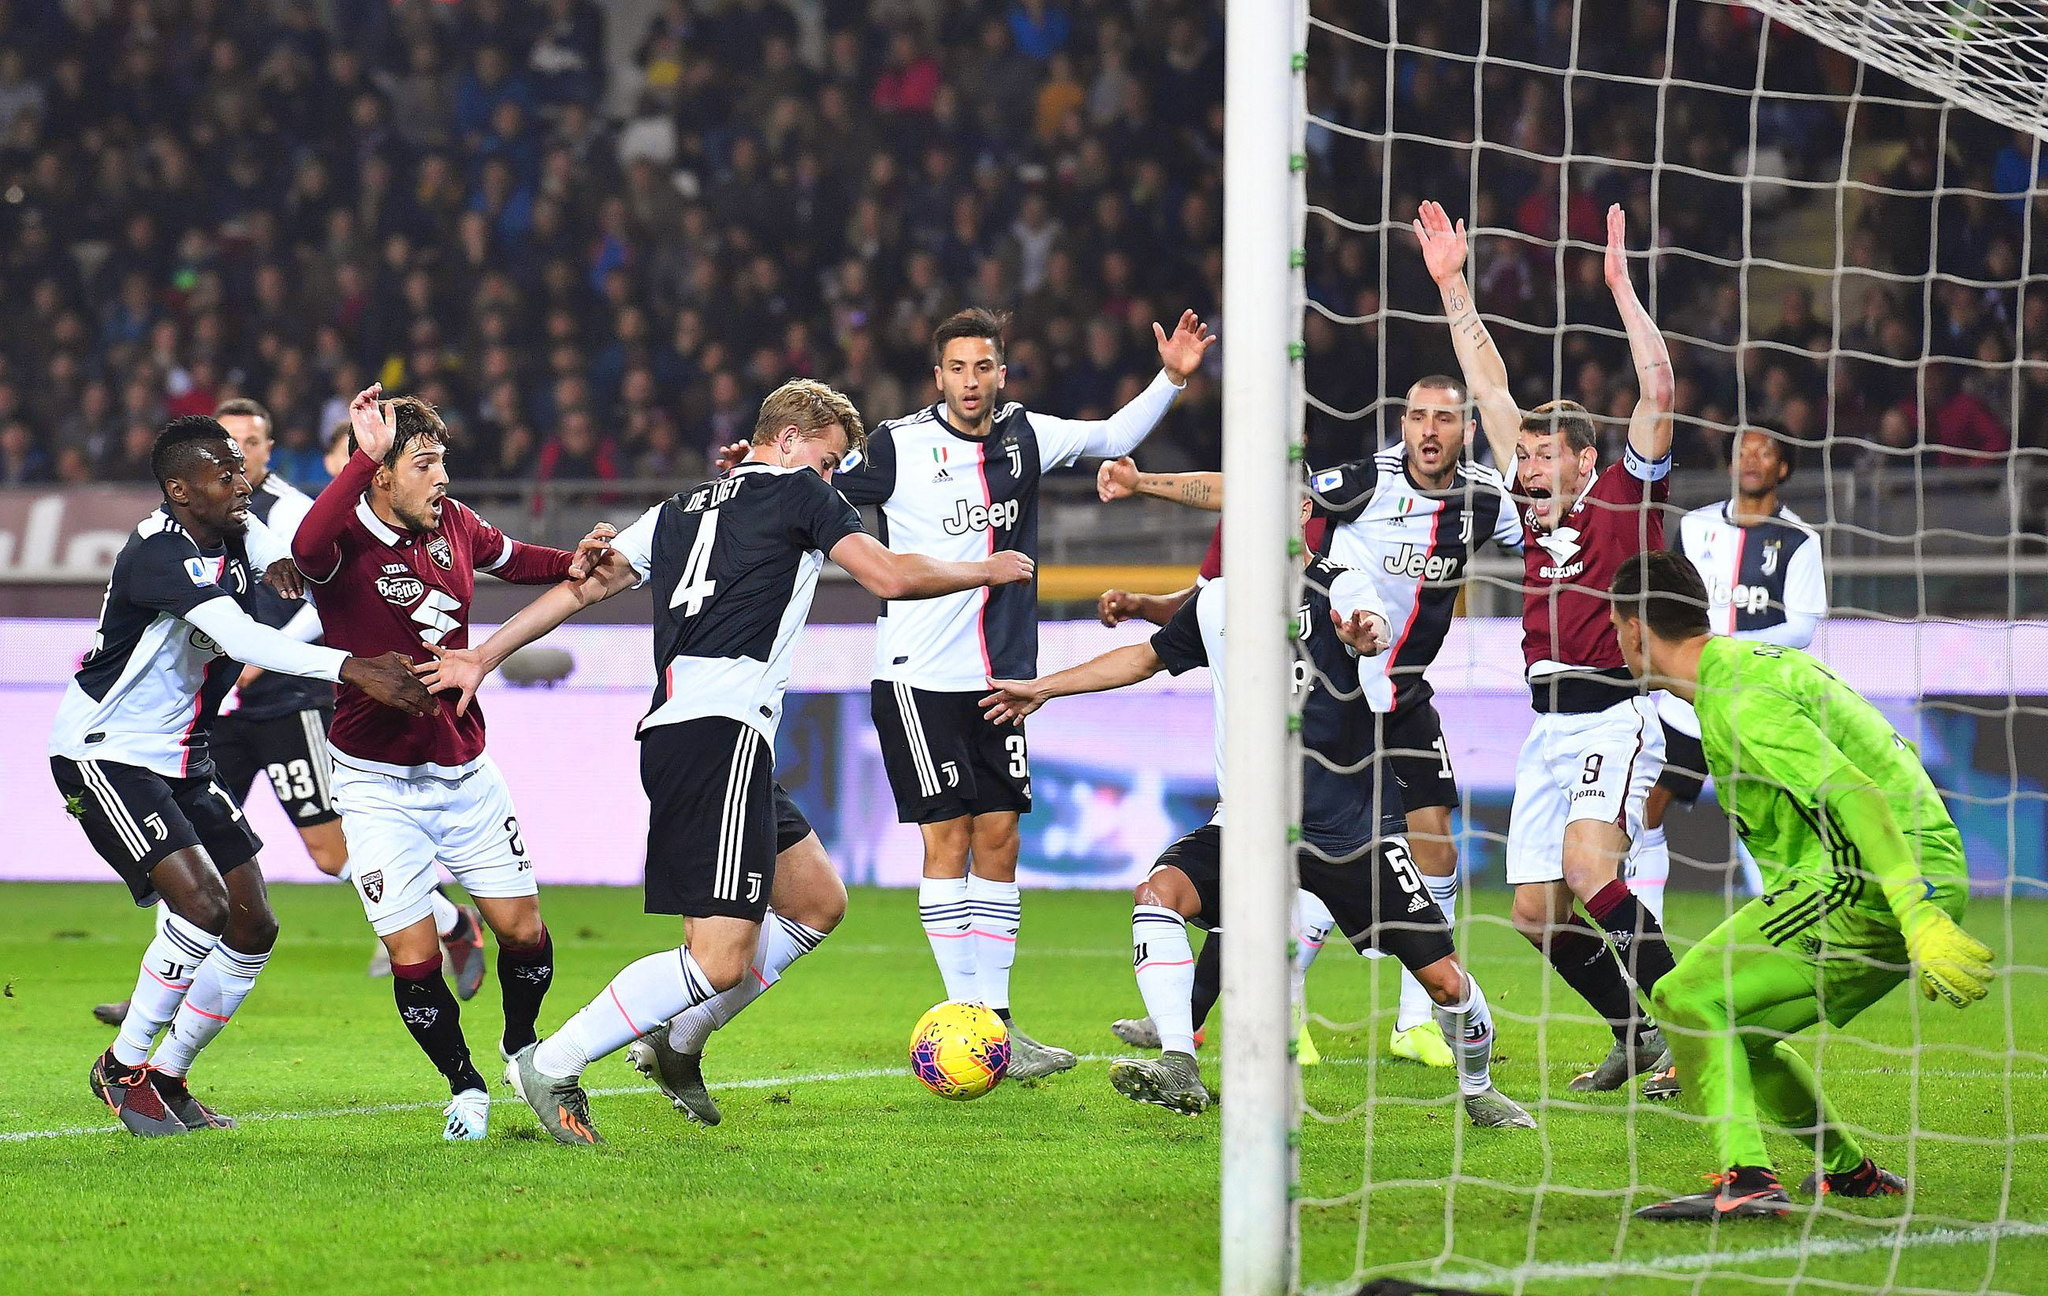 Torino - Juventus: resumen, goles y resultado - Serie A | Marca.com